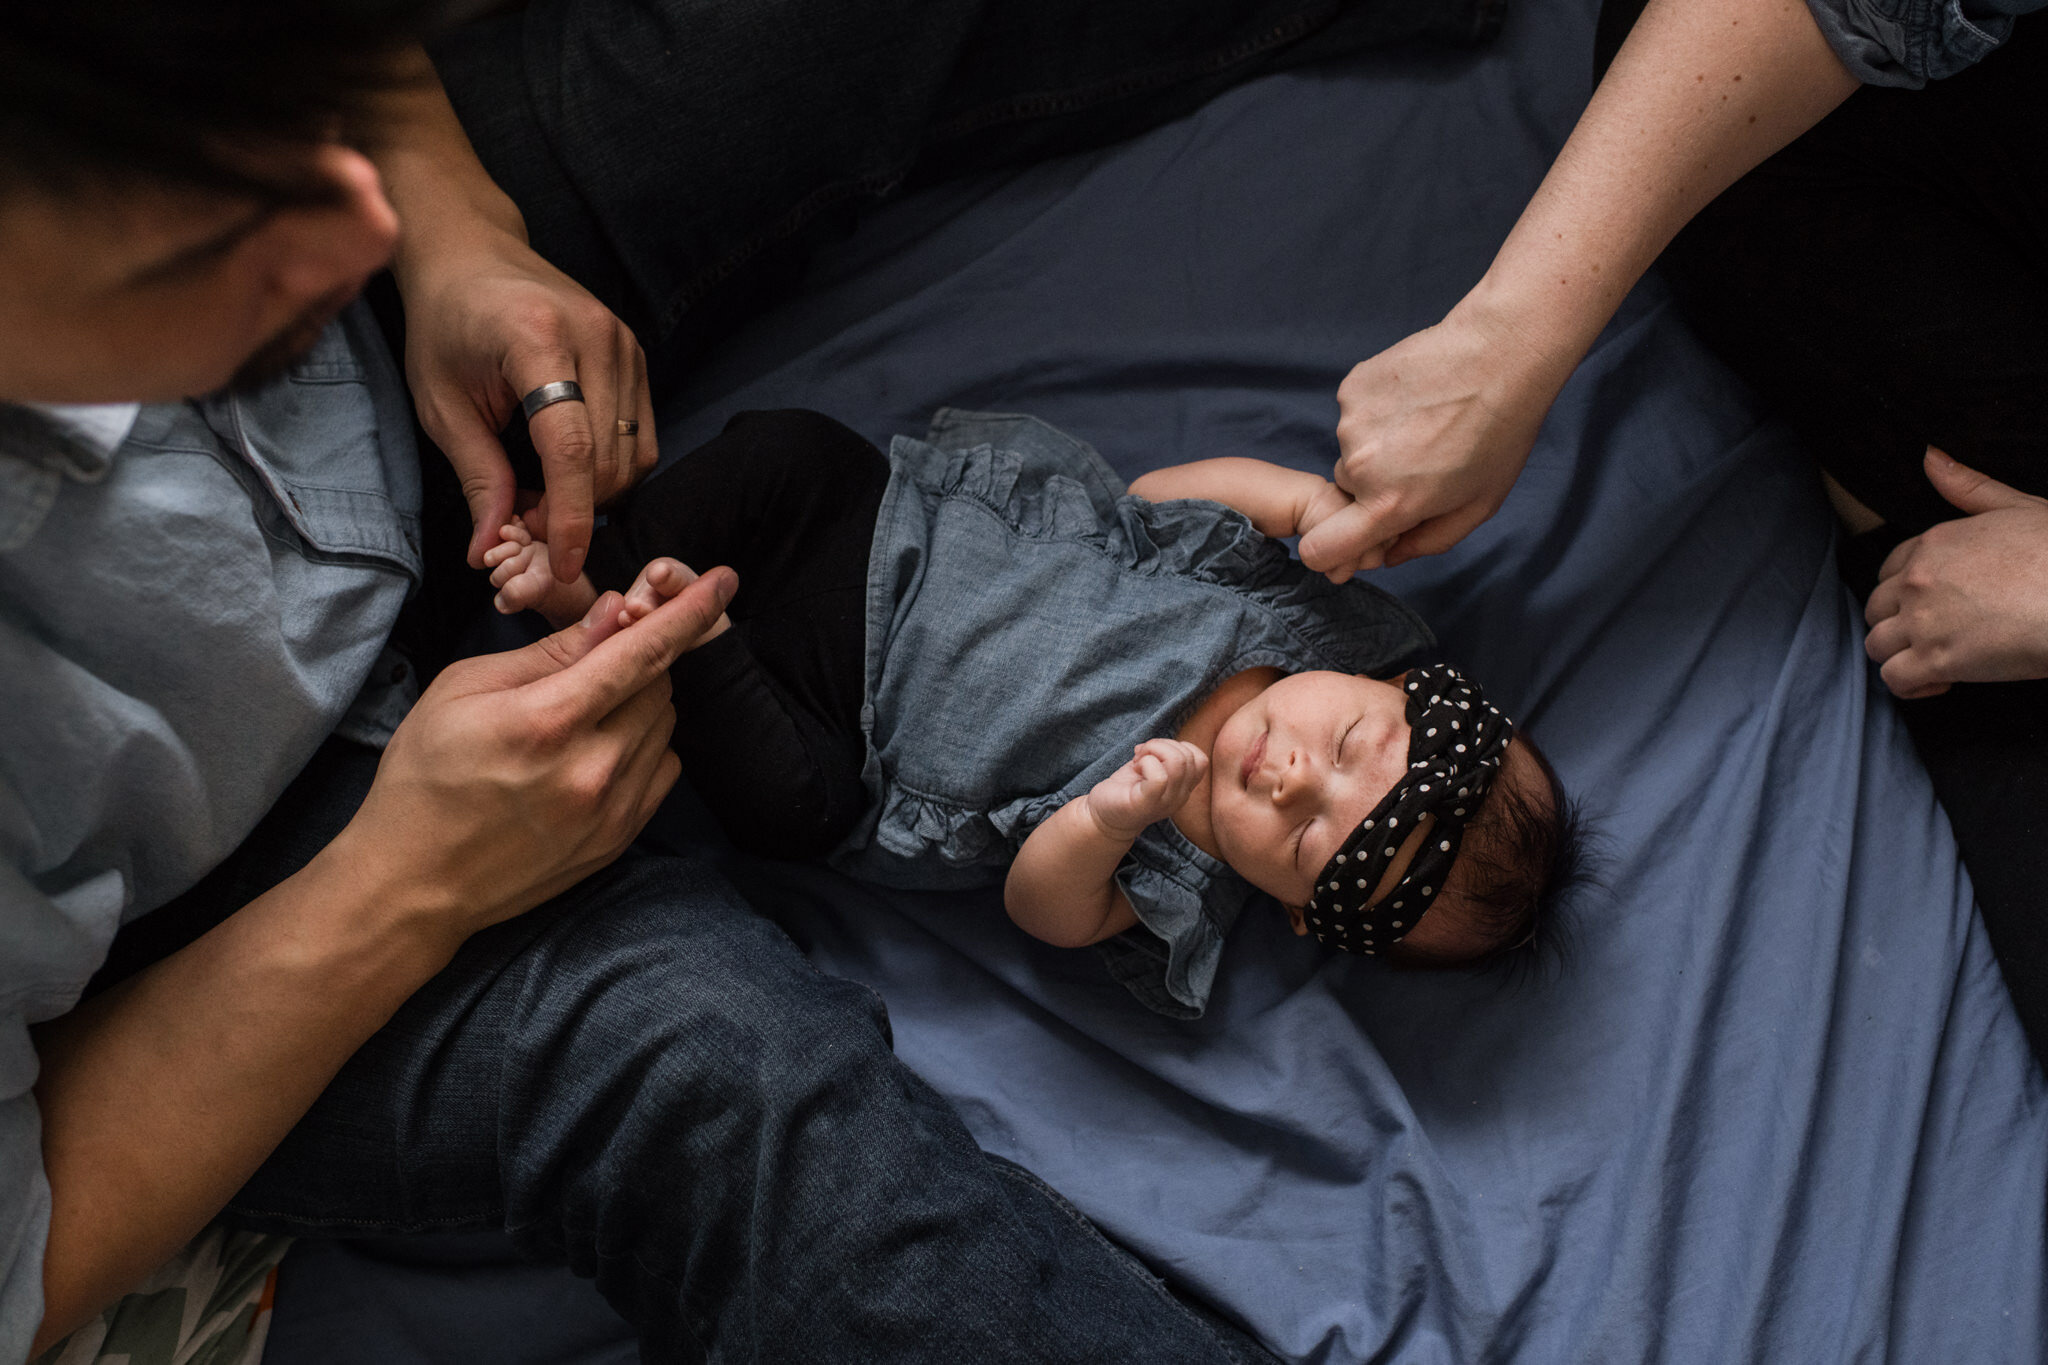 962-newborn-family-photoshoot-documentary-at-home-indoors-toronto-markham-photographer.jpg